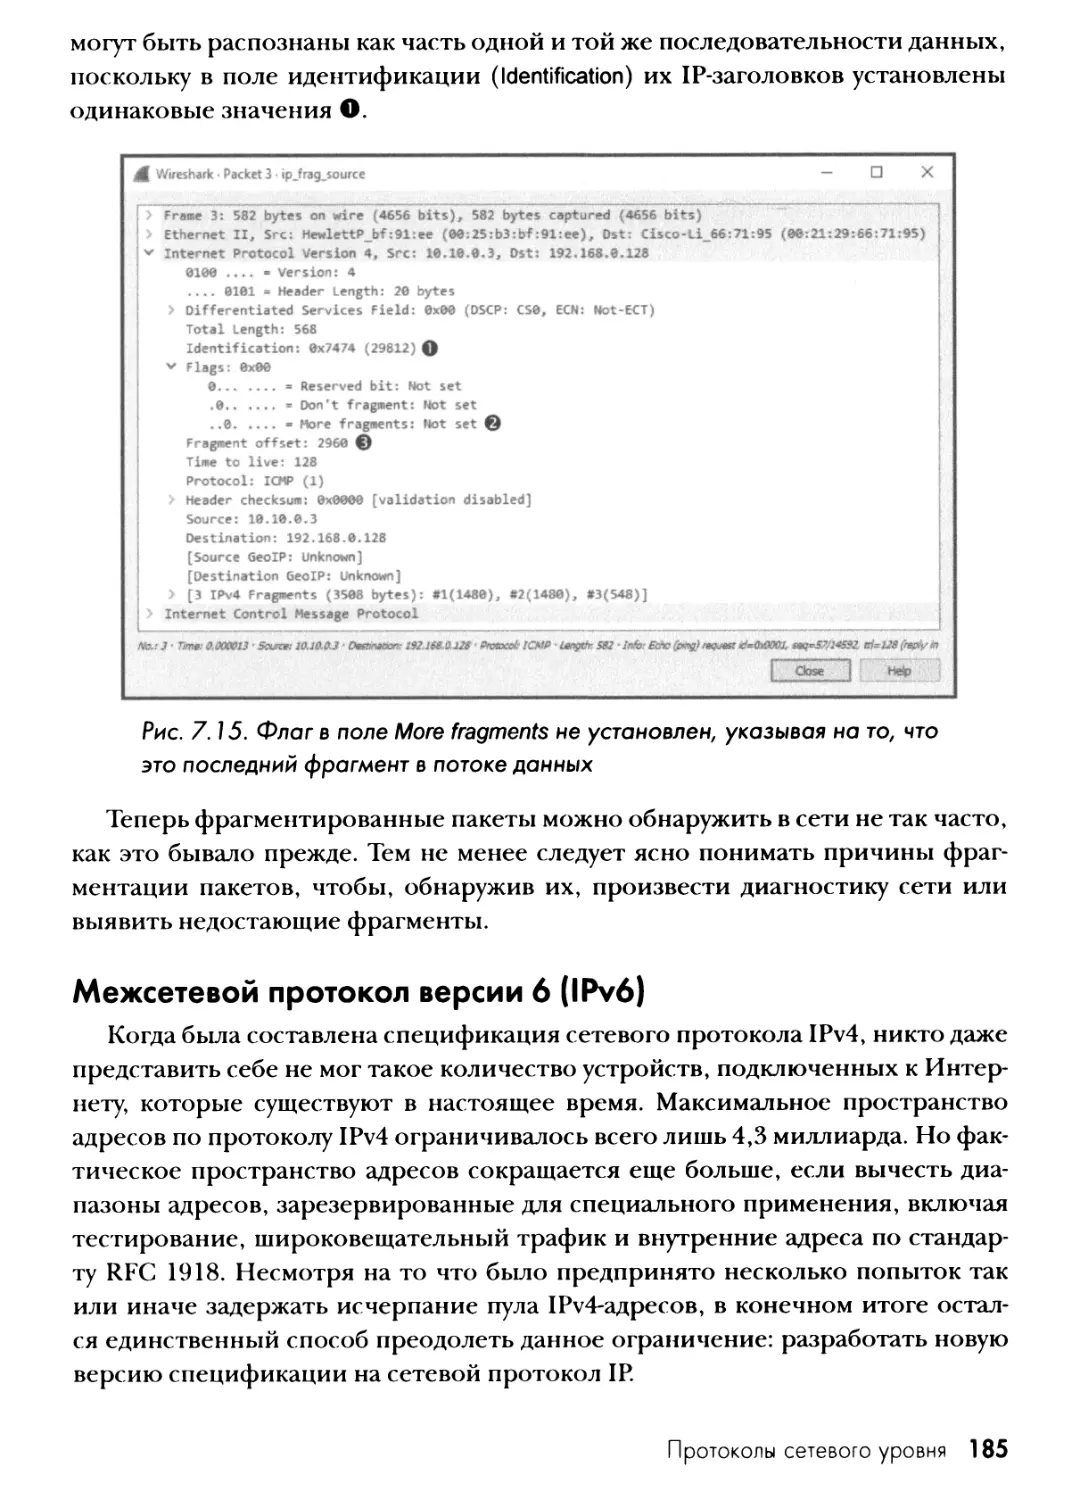 Межсетевой протокол версии 6 (IPv6)